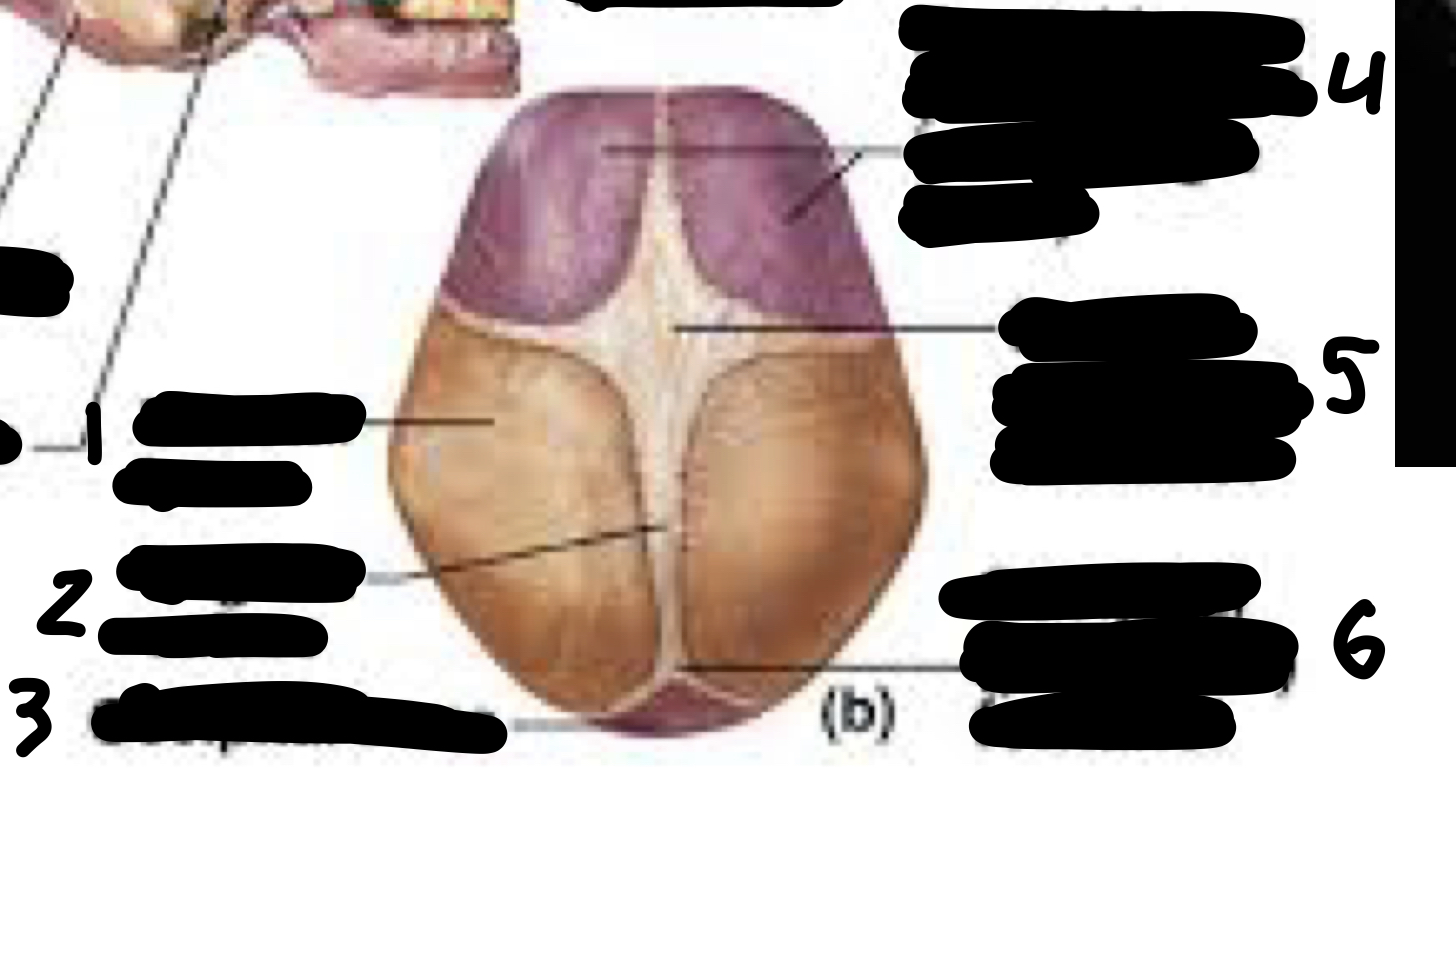 <ol><li><p>parietal bone</p></li><li><p>sagittal suture</p></li><li><p>occipital bone</p></li><li><p>frontal bone (not fused yet)</p></li><li><p>frontal (anterior) fontanel</p></li><li><p>occipital (posterior) fontanel</p></li></ol>